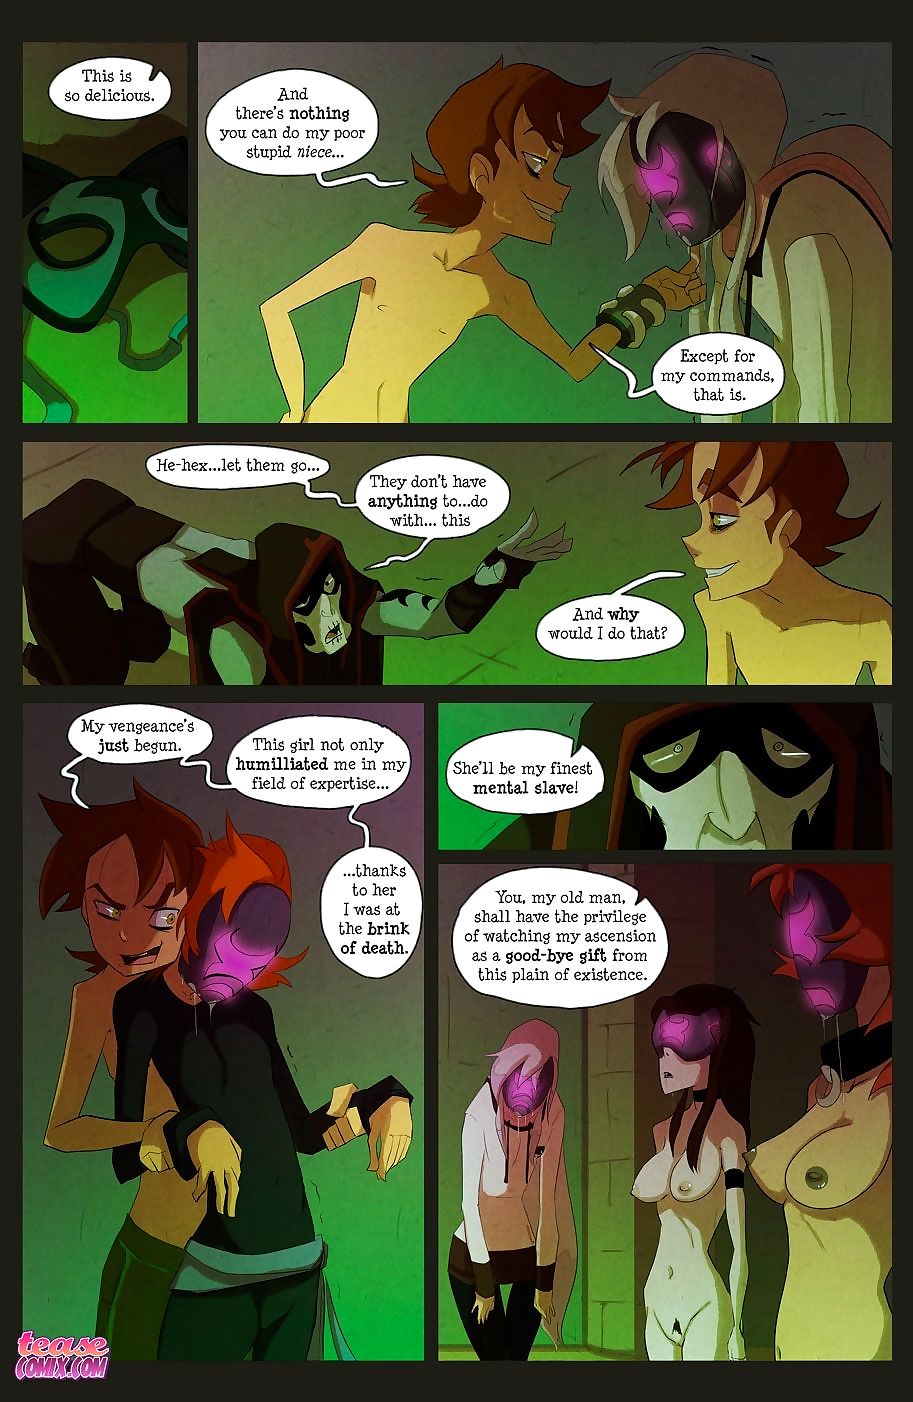 die Hexe Mit keine name - Teil 4 page 1